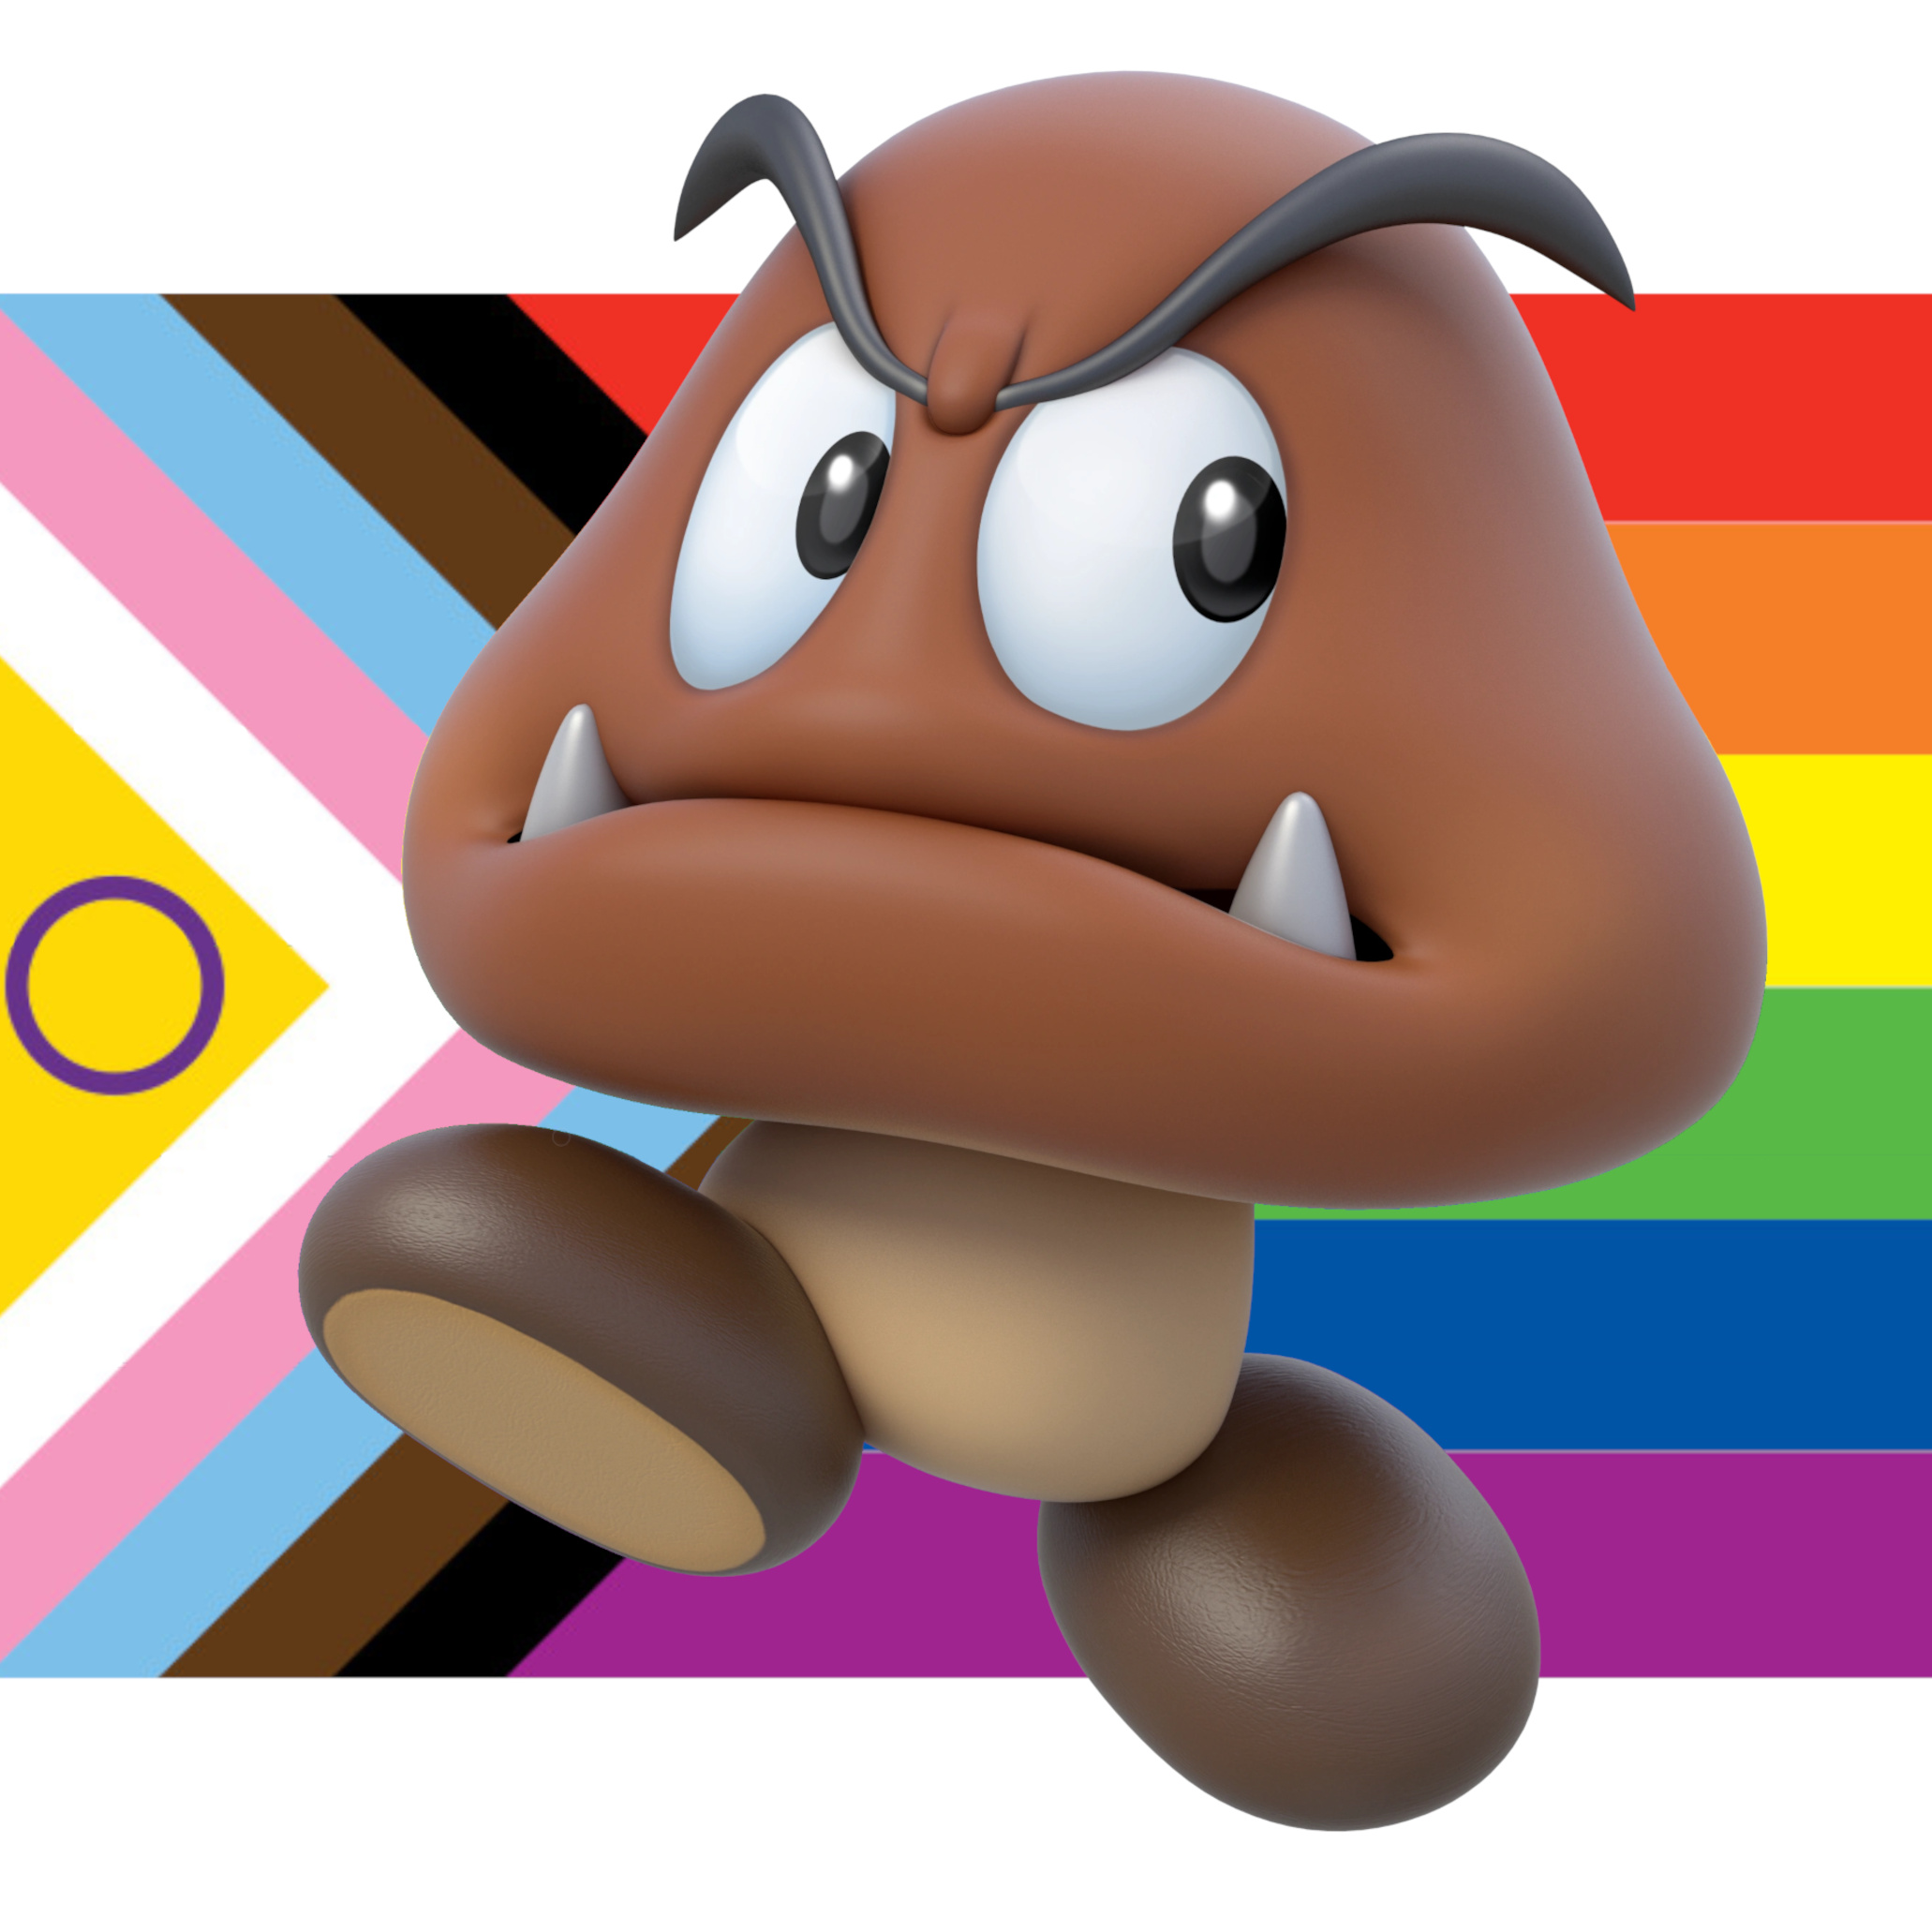 Profile Picture, a Goomba in front of a progressive pride flag